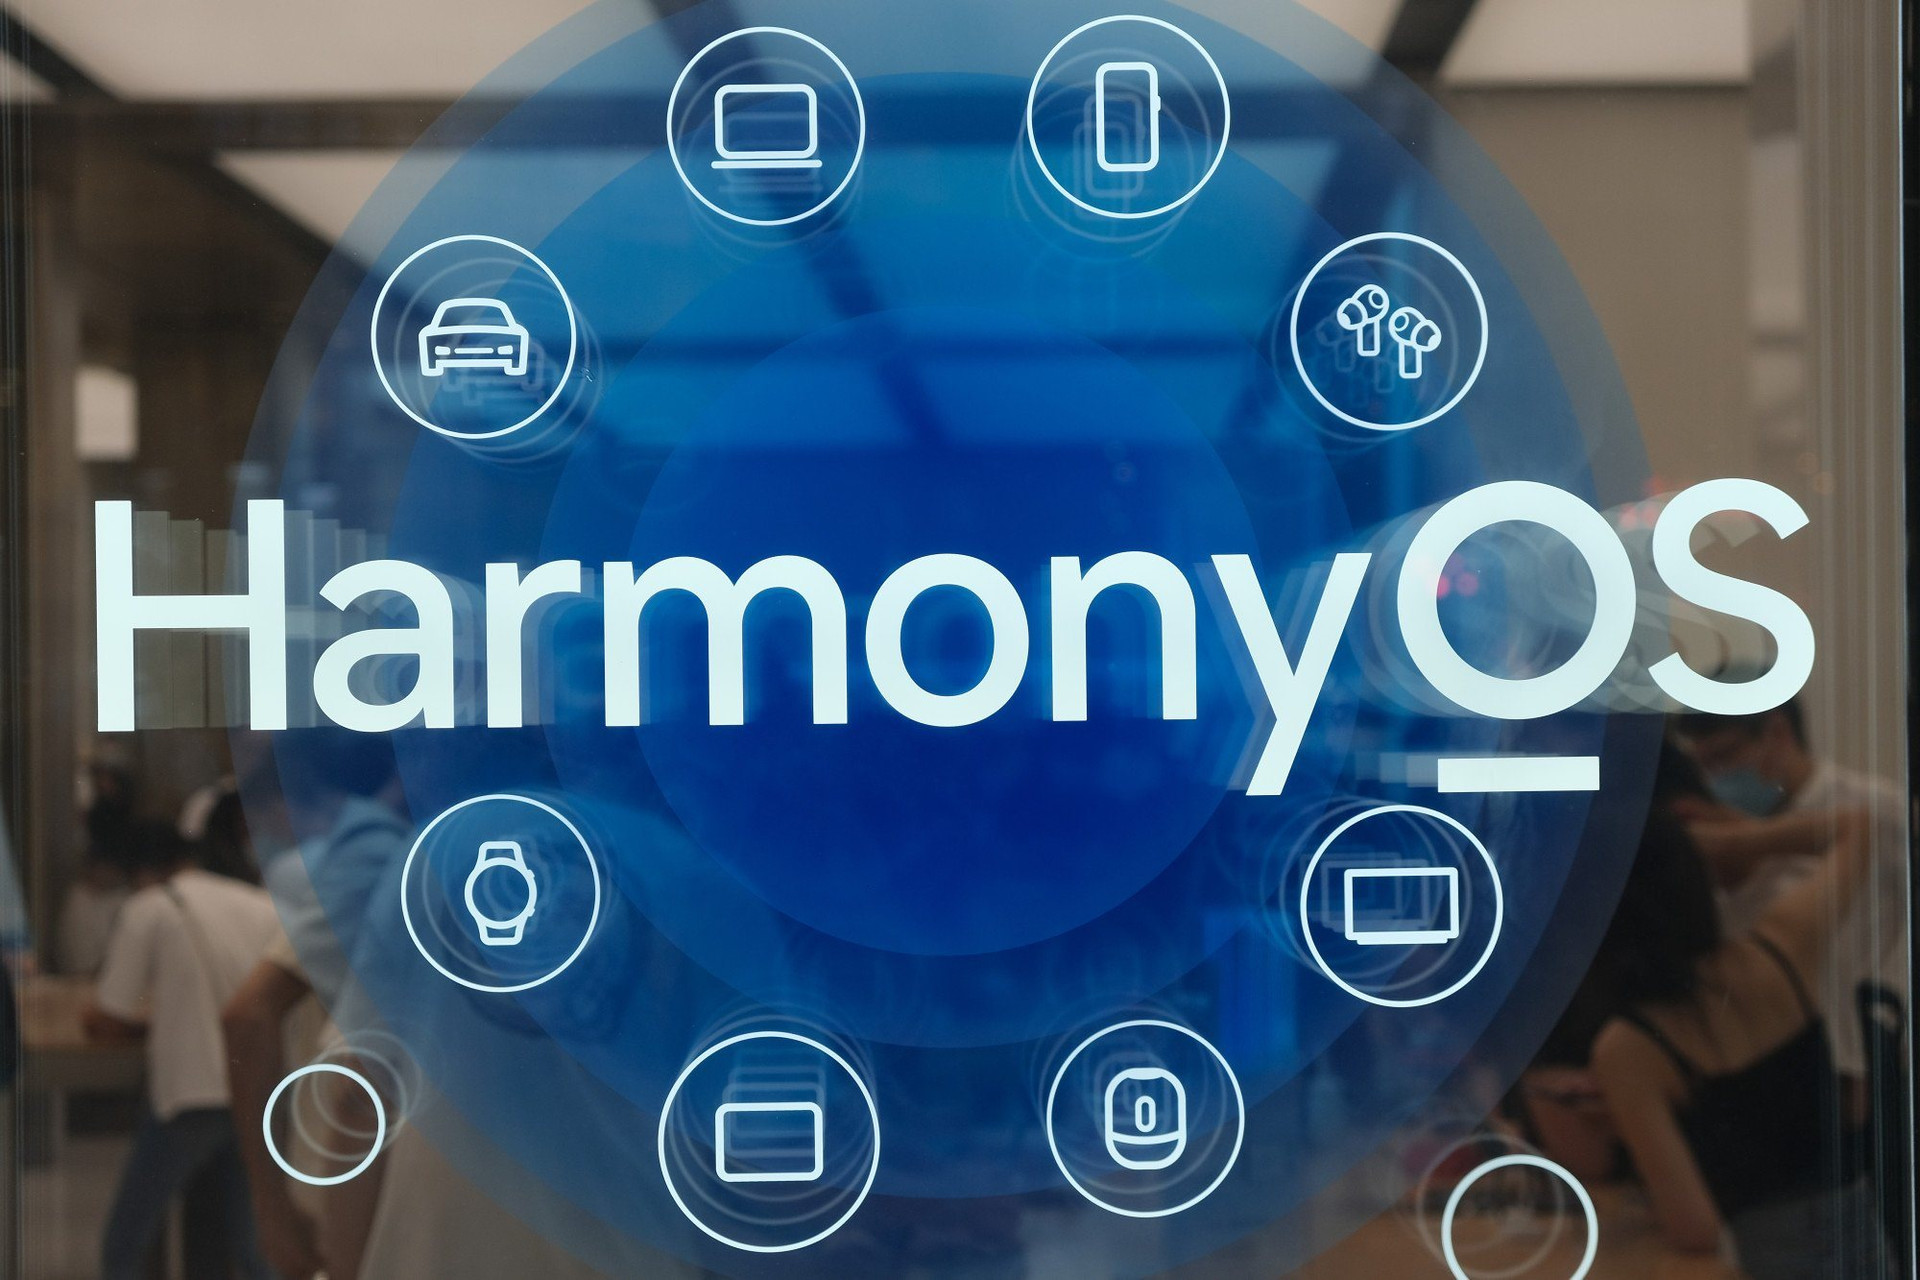 Canh bạc thay thế Android của Huawei thành công ngoài mong đợi, các ông lớn công nghệ Trung Quốc ồ ạt tuyển coder để viết ứng dụng cho HarmonyOS - Ảnh 2.